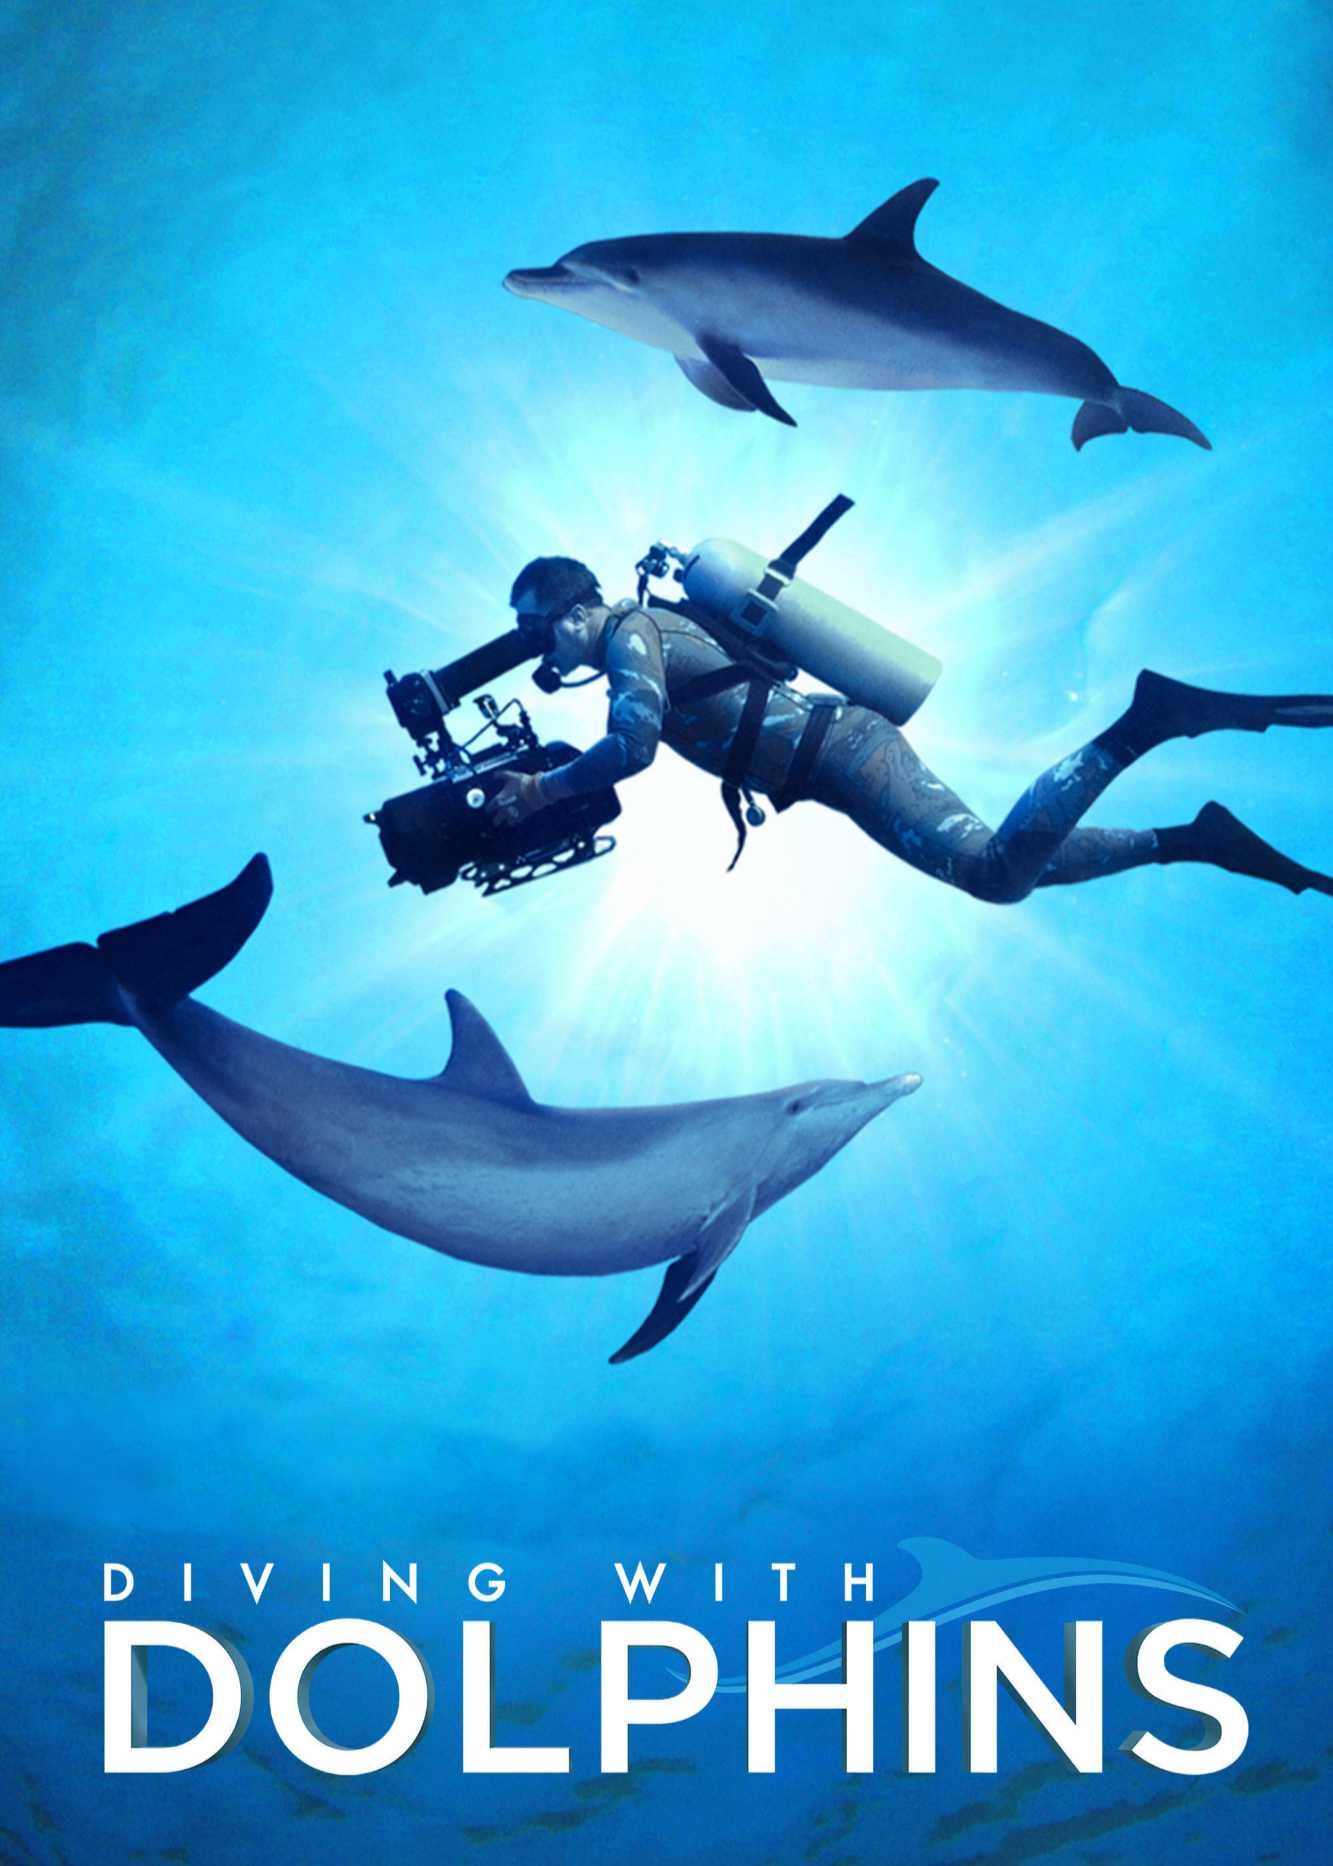 Diving with dolphins - Diving with dolphins